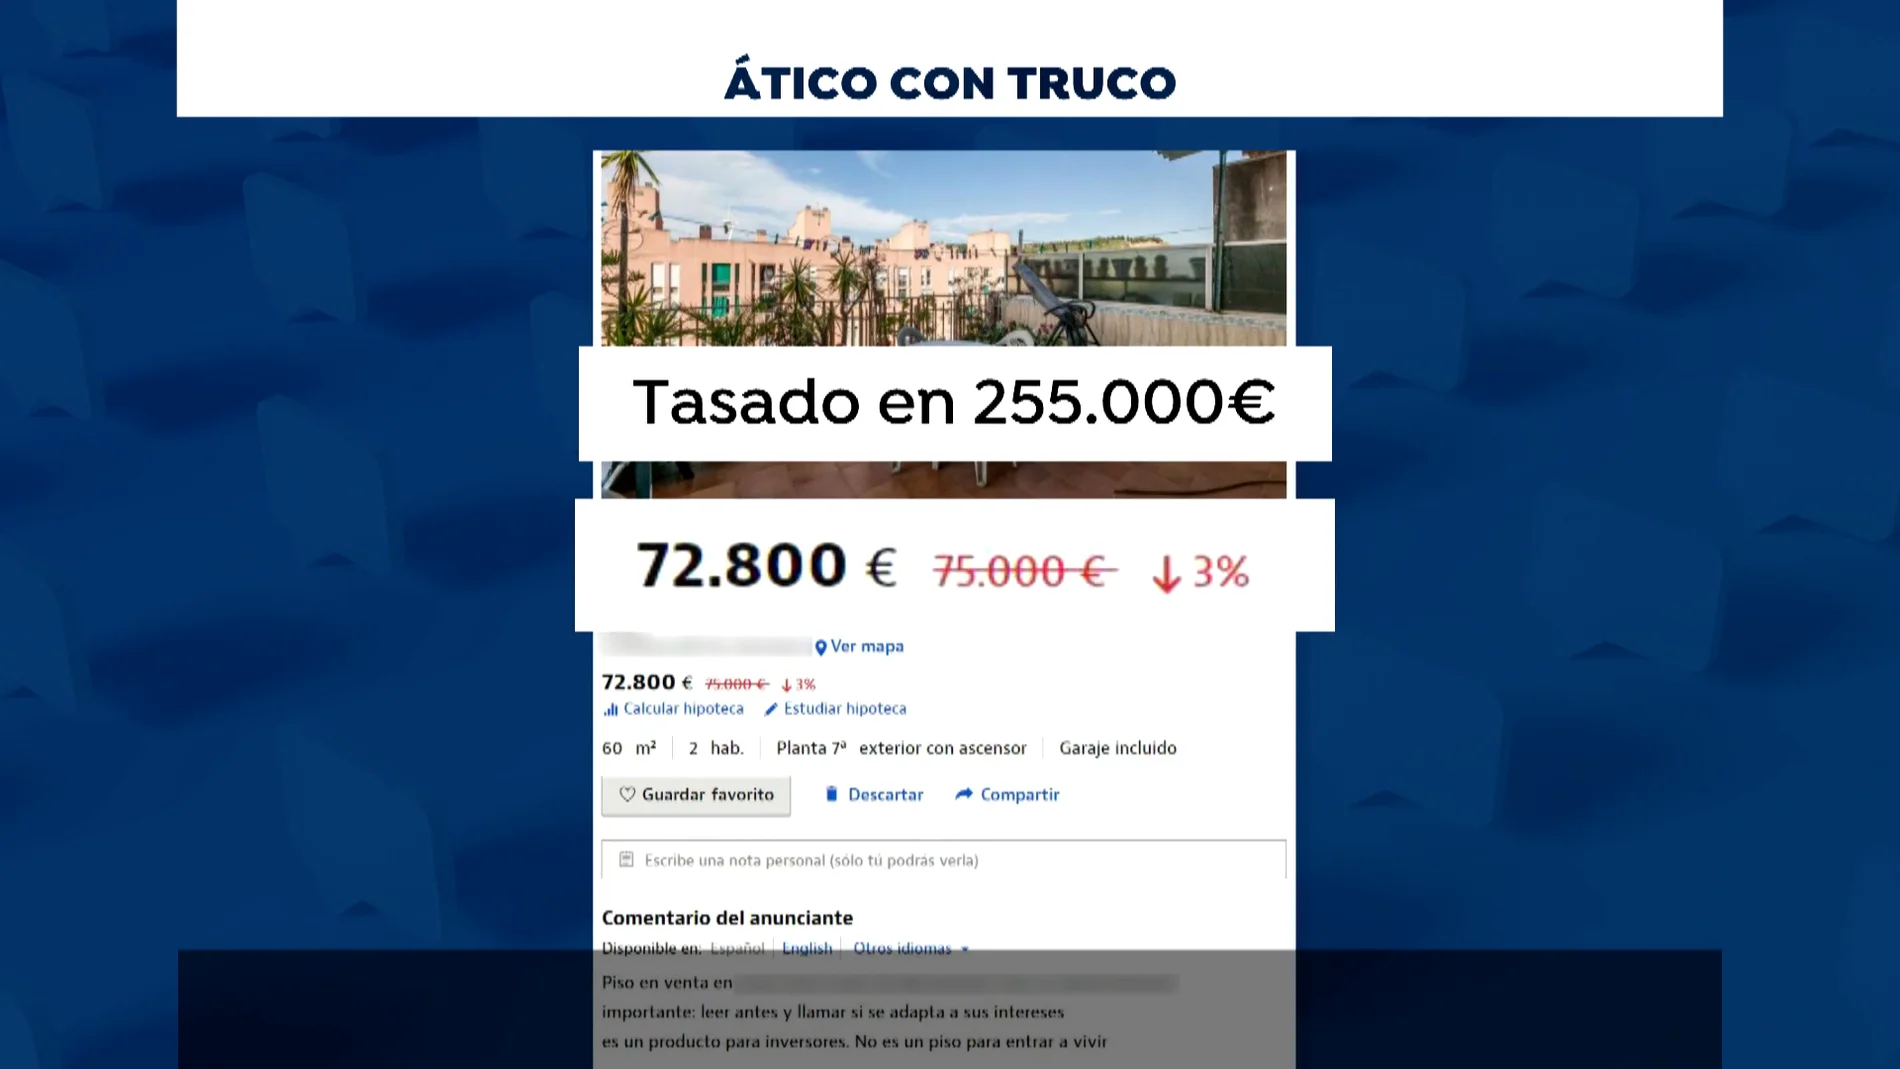 A la venta en Idealista un ático de 60 m2 en Barcelona por 72.800 euros el que hombre de 71 años hasta que